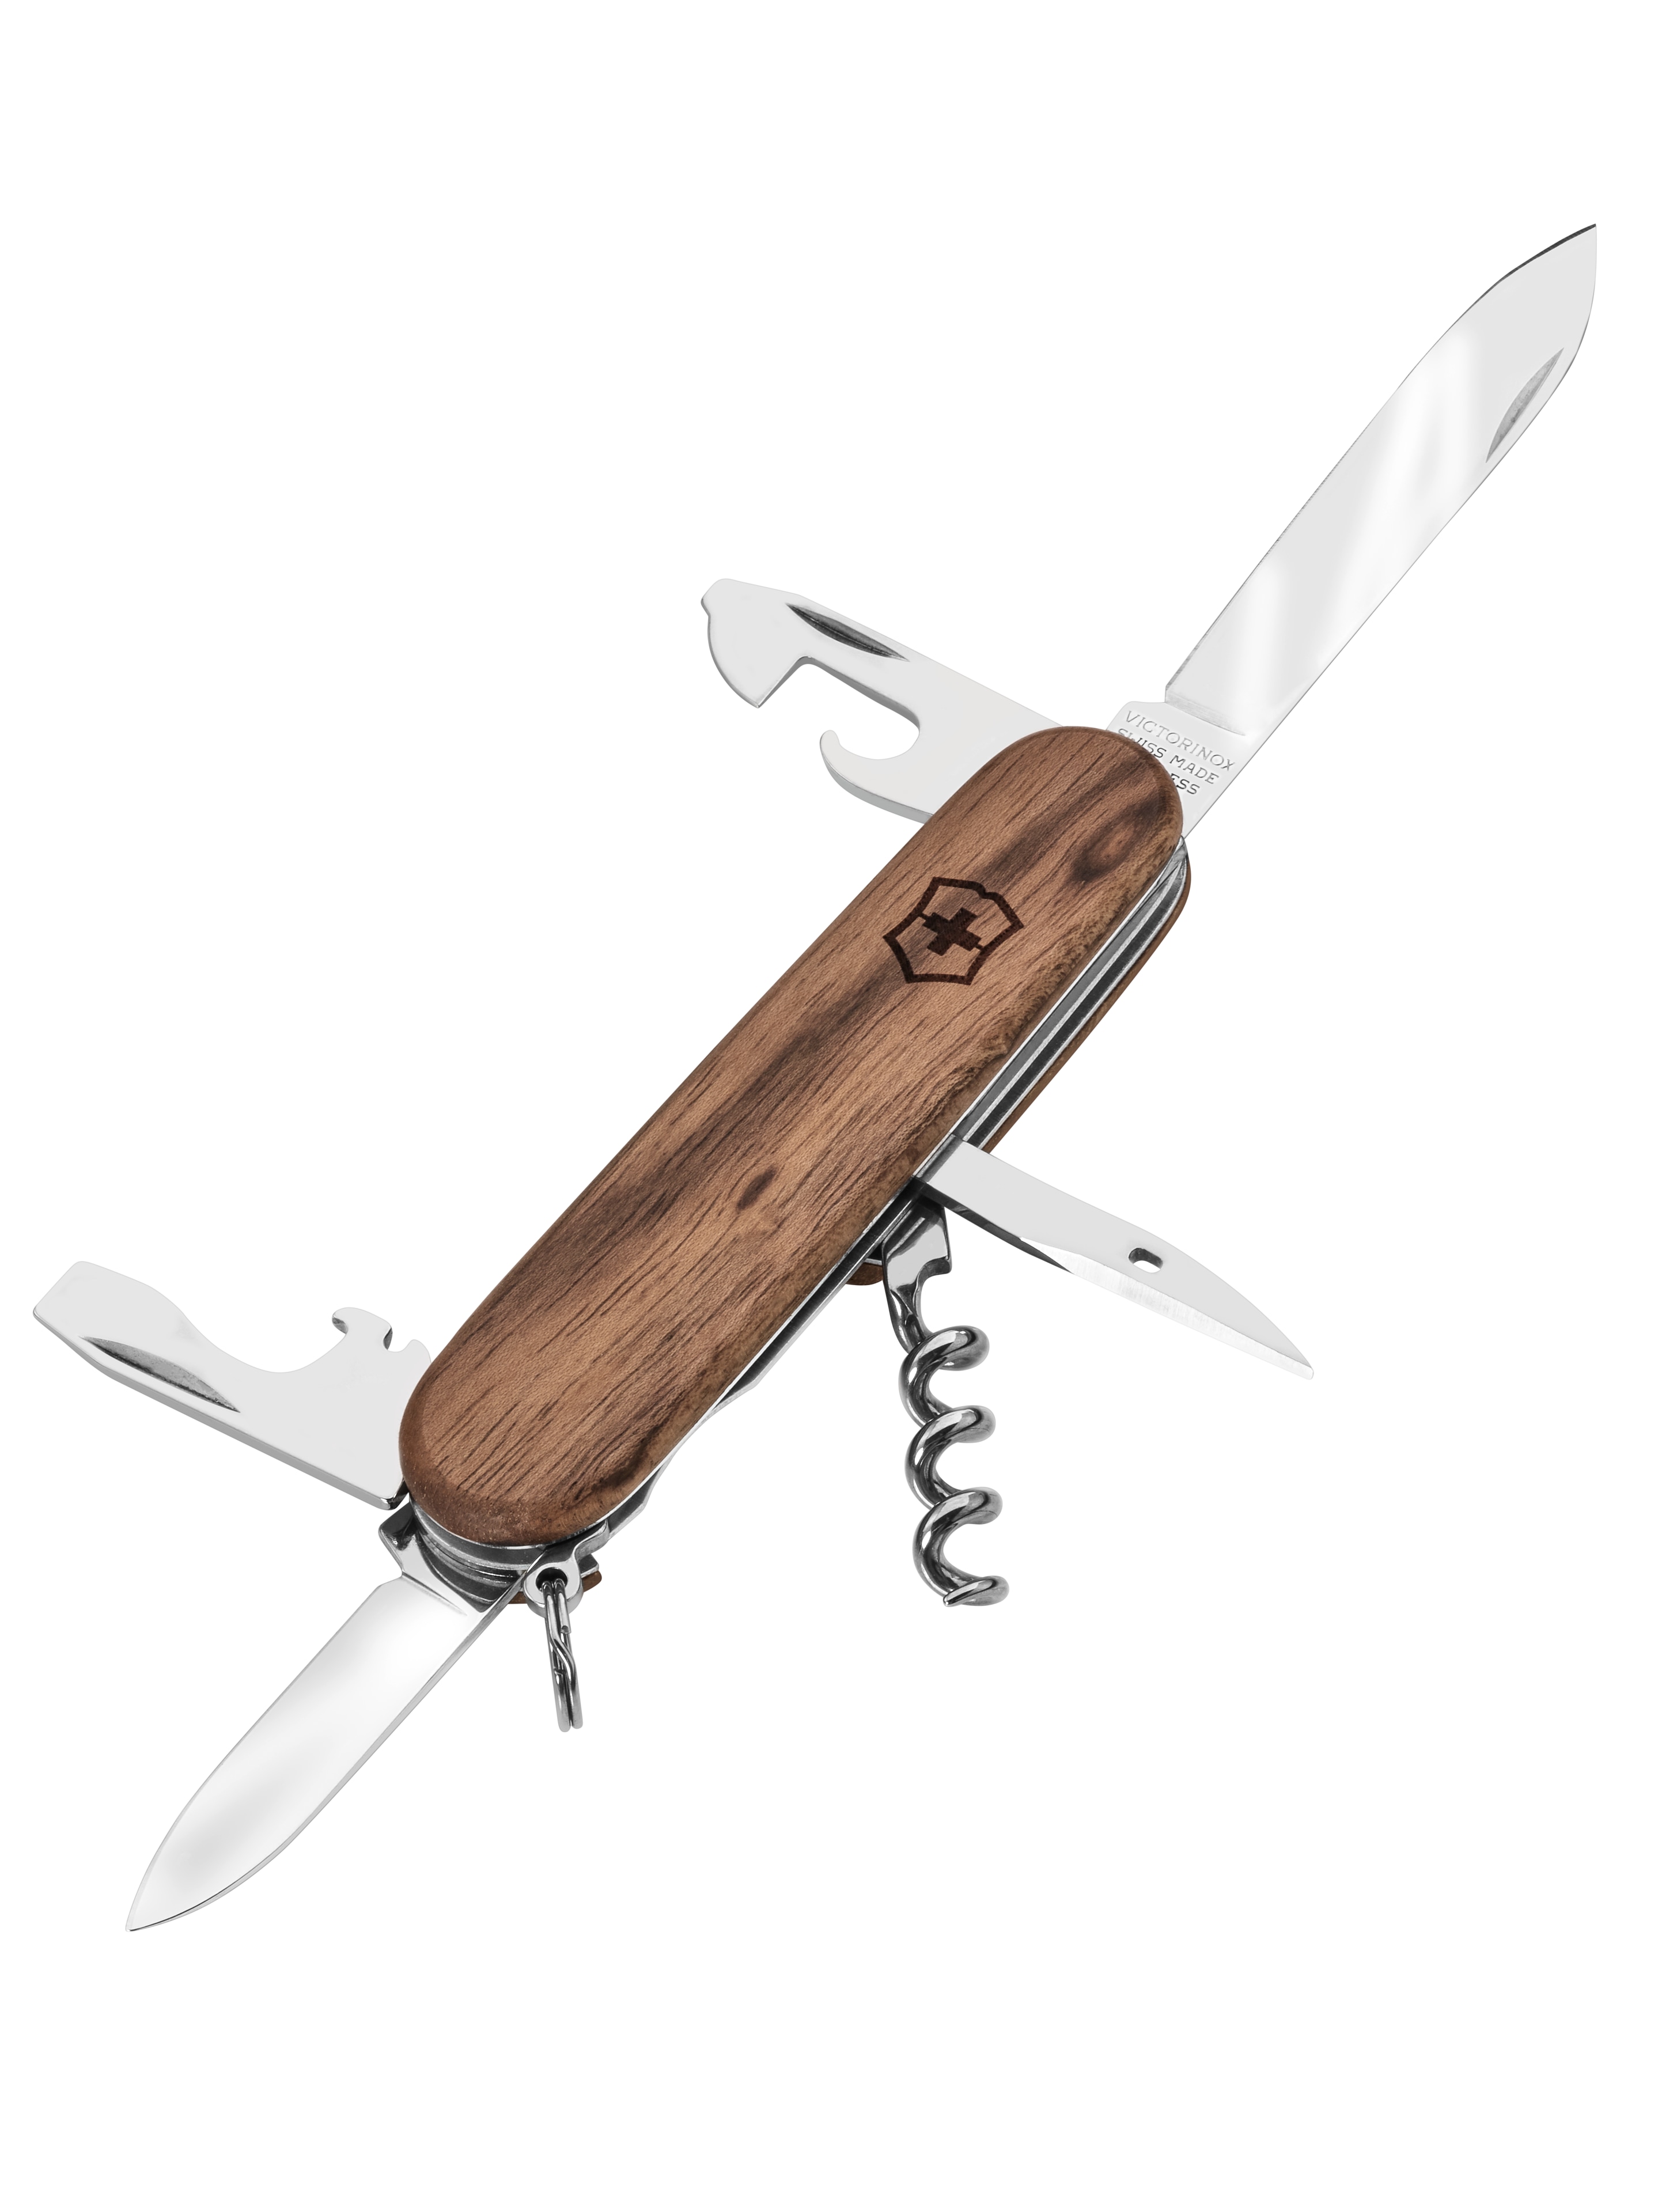 Taschenmesser, Spartan Wood - braun, Edelstahl / Nußbaumholz, Victorinox